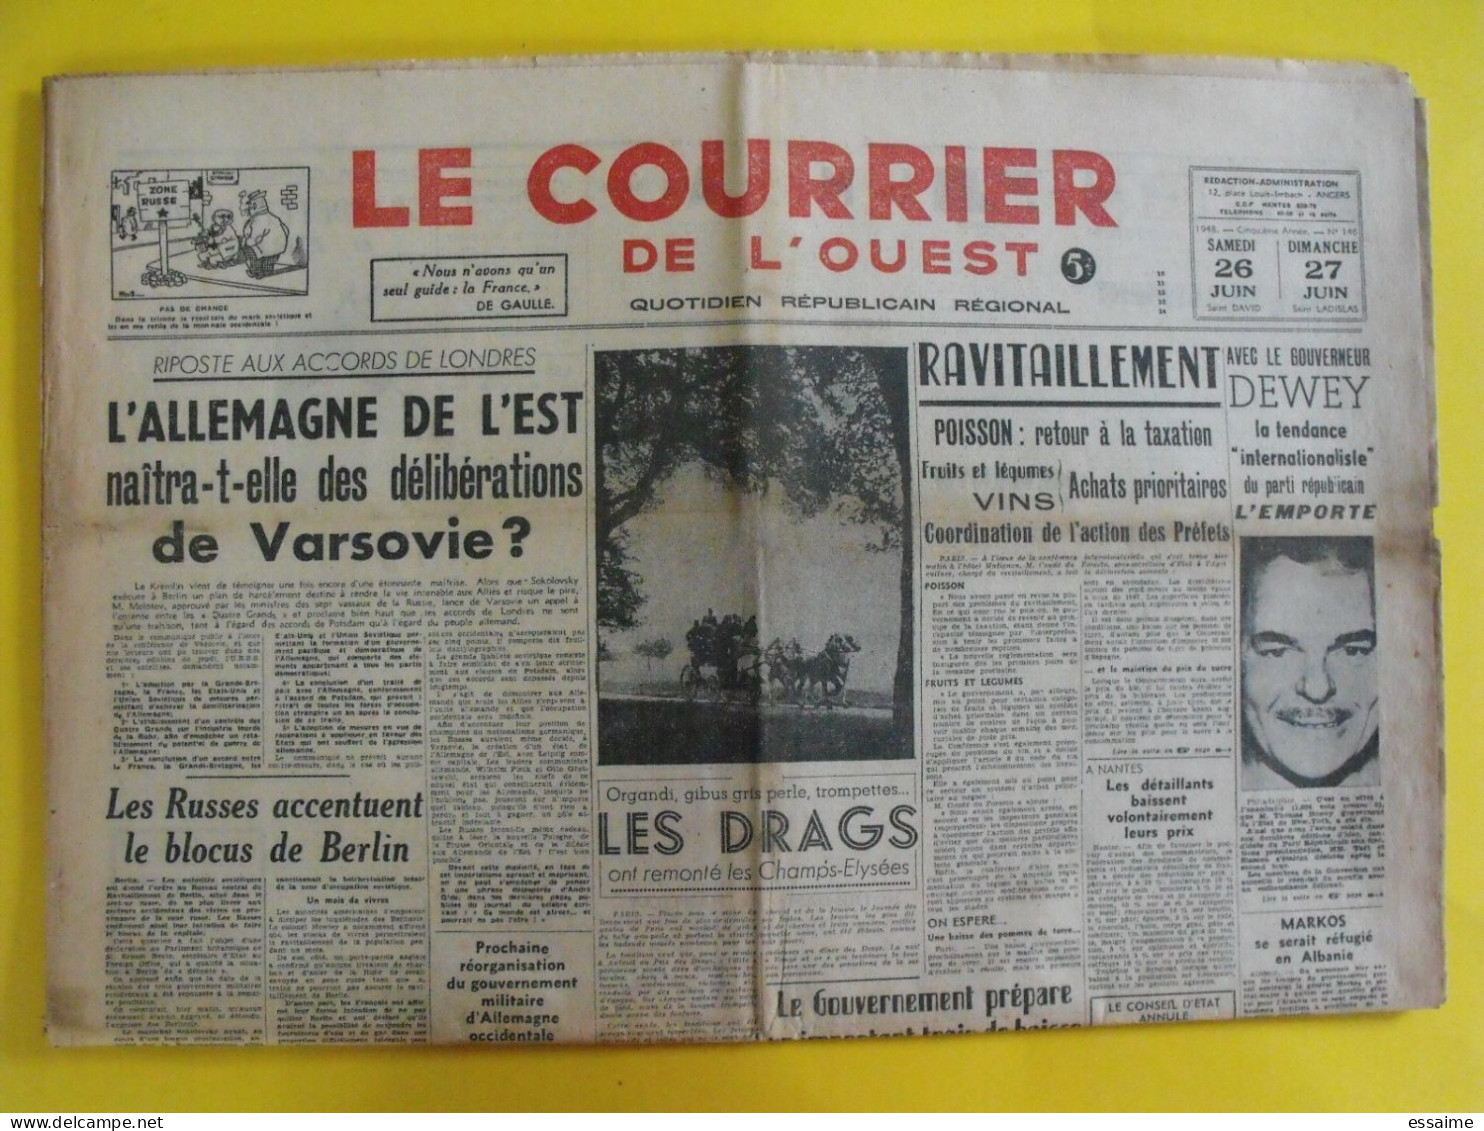 4 n° journal Le Courrier de l'Ouest de 1948-49 Colombie épuration Dissard Marty Clermont Palestine Irgoun